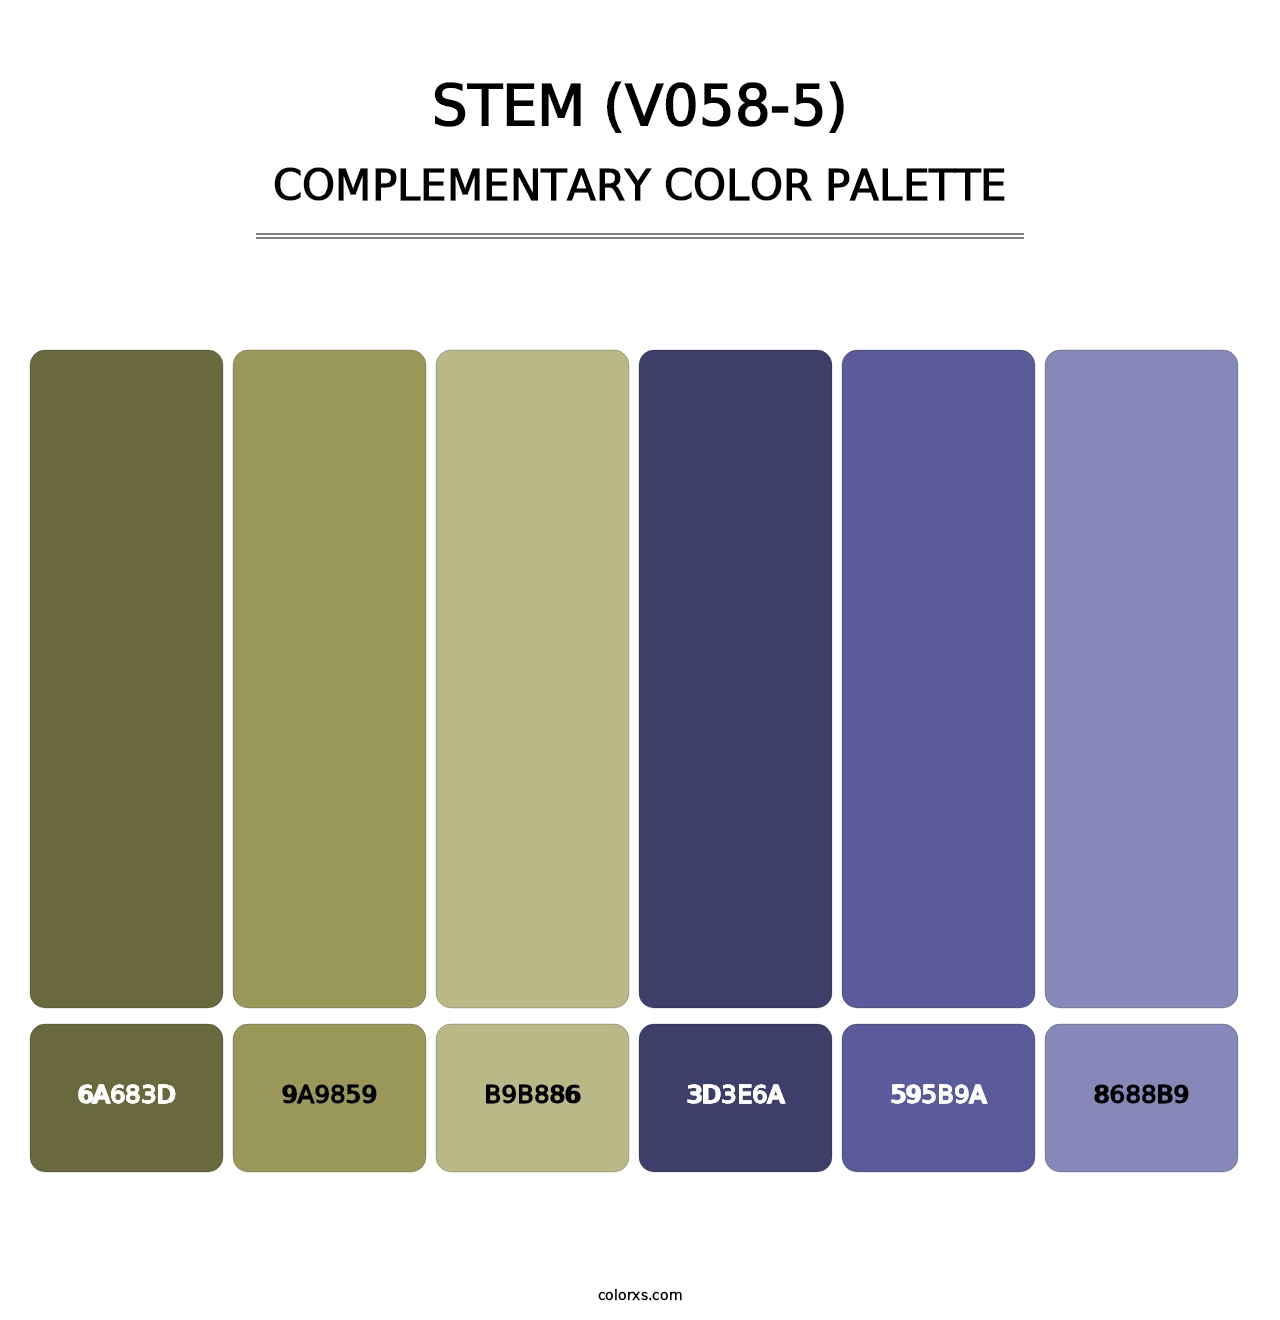 Stem (V058-5) - Complementary Color Palette